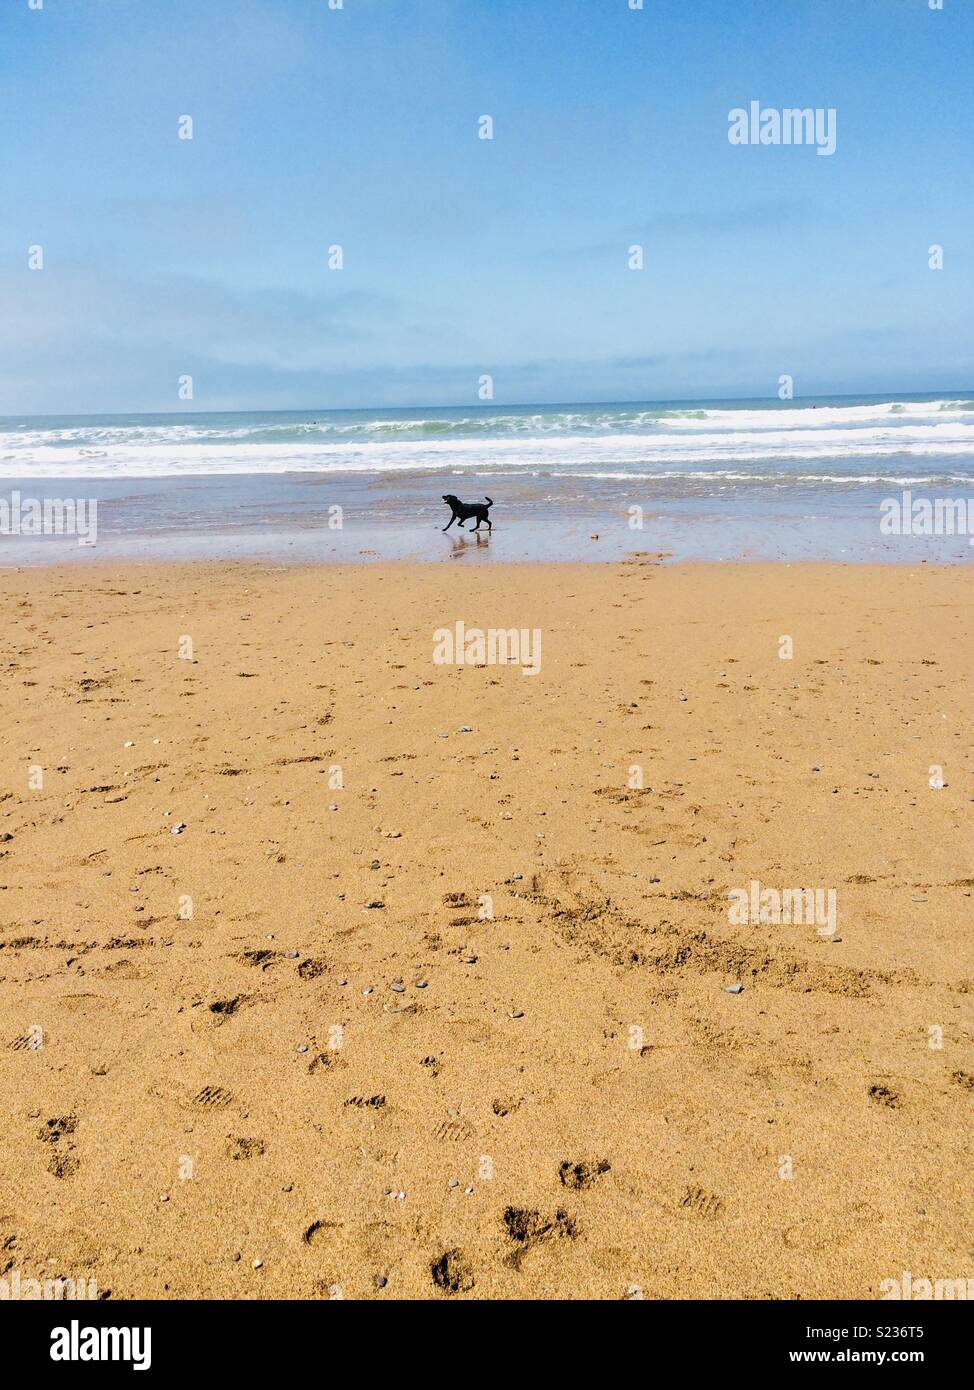 Dog on a beach Stock Photo